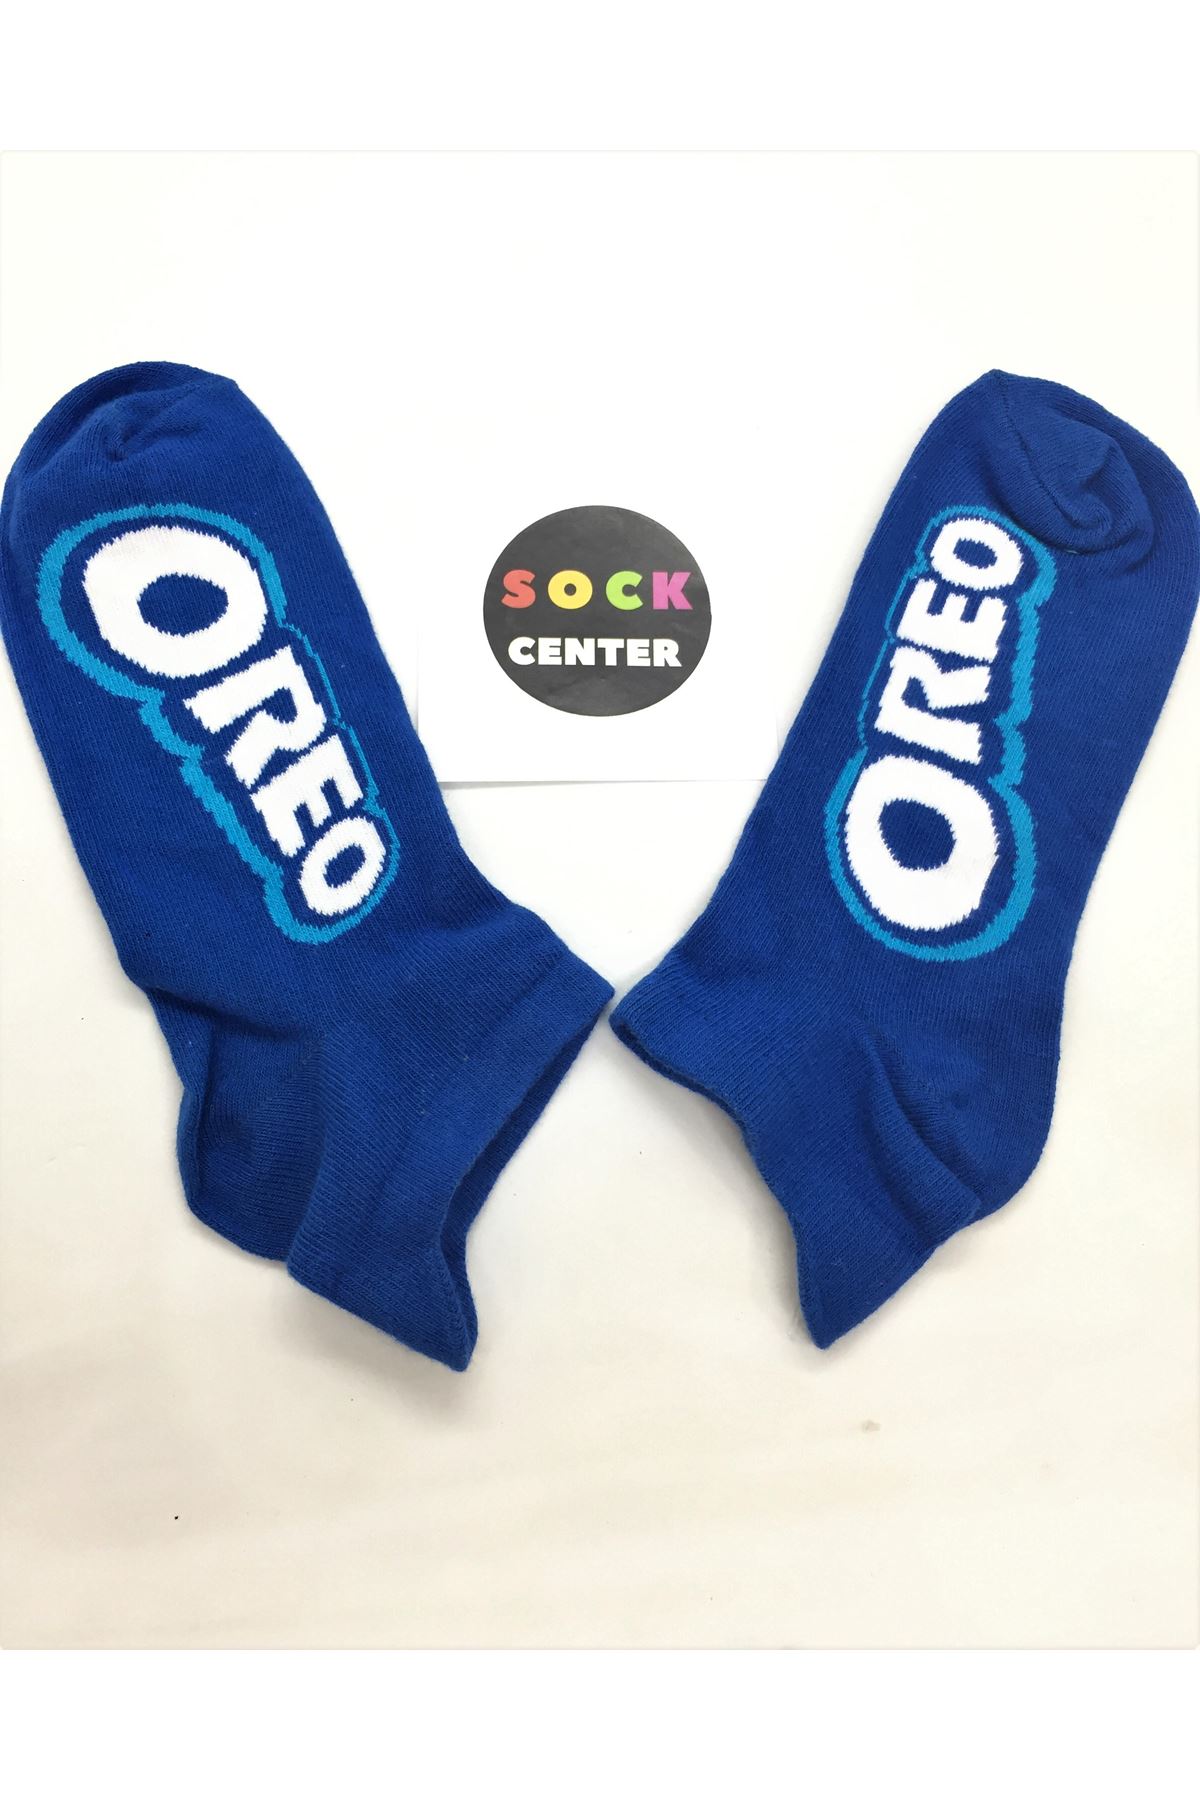 Oreo - Mavi Patik Çorap